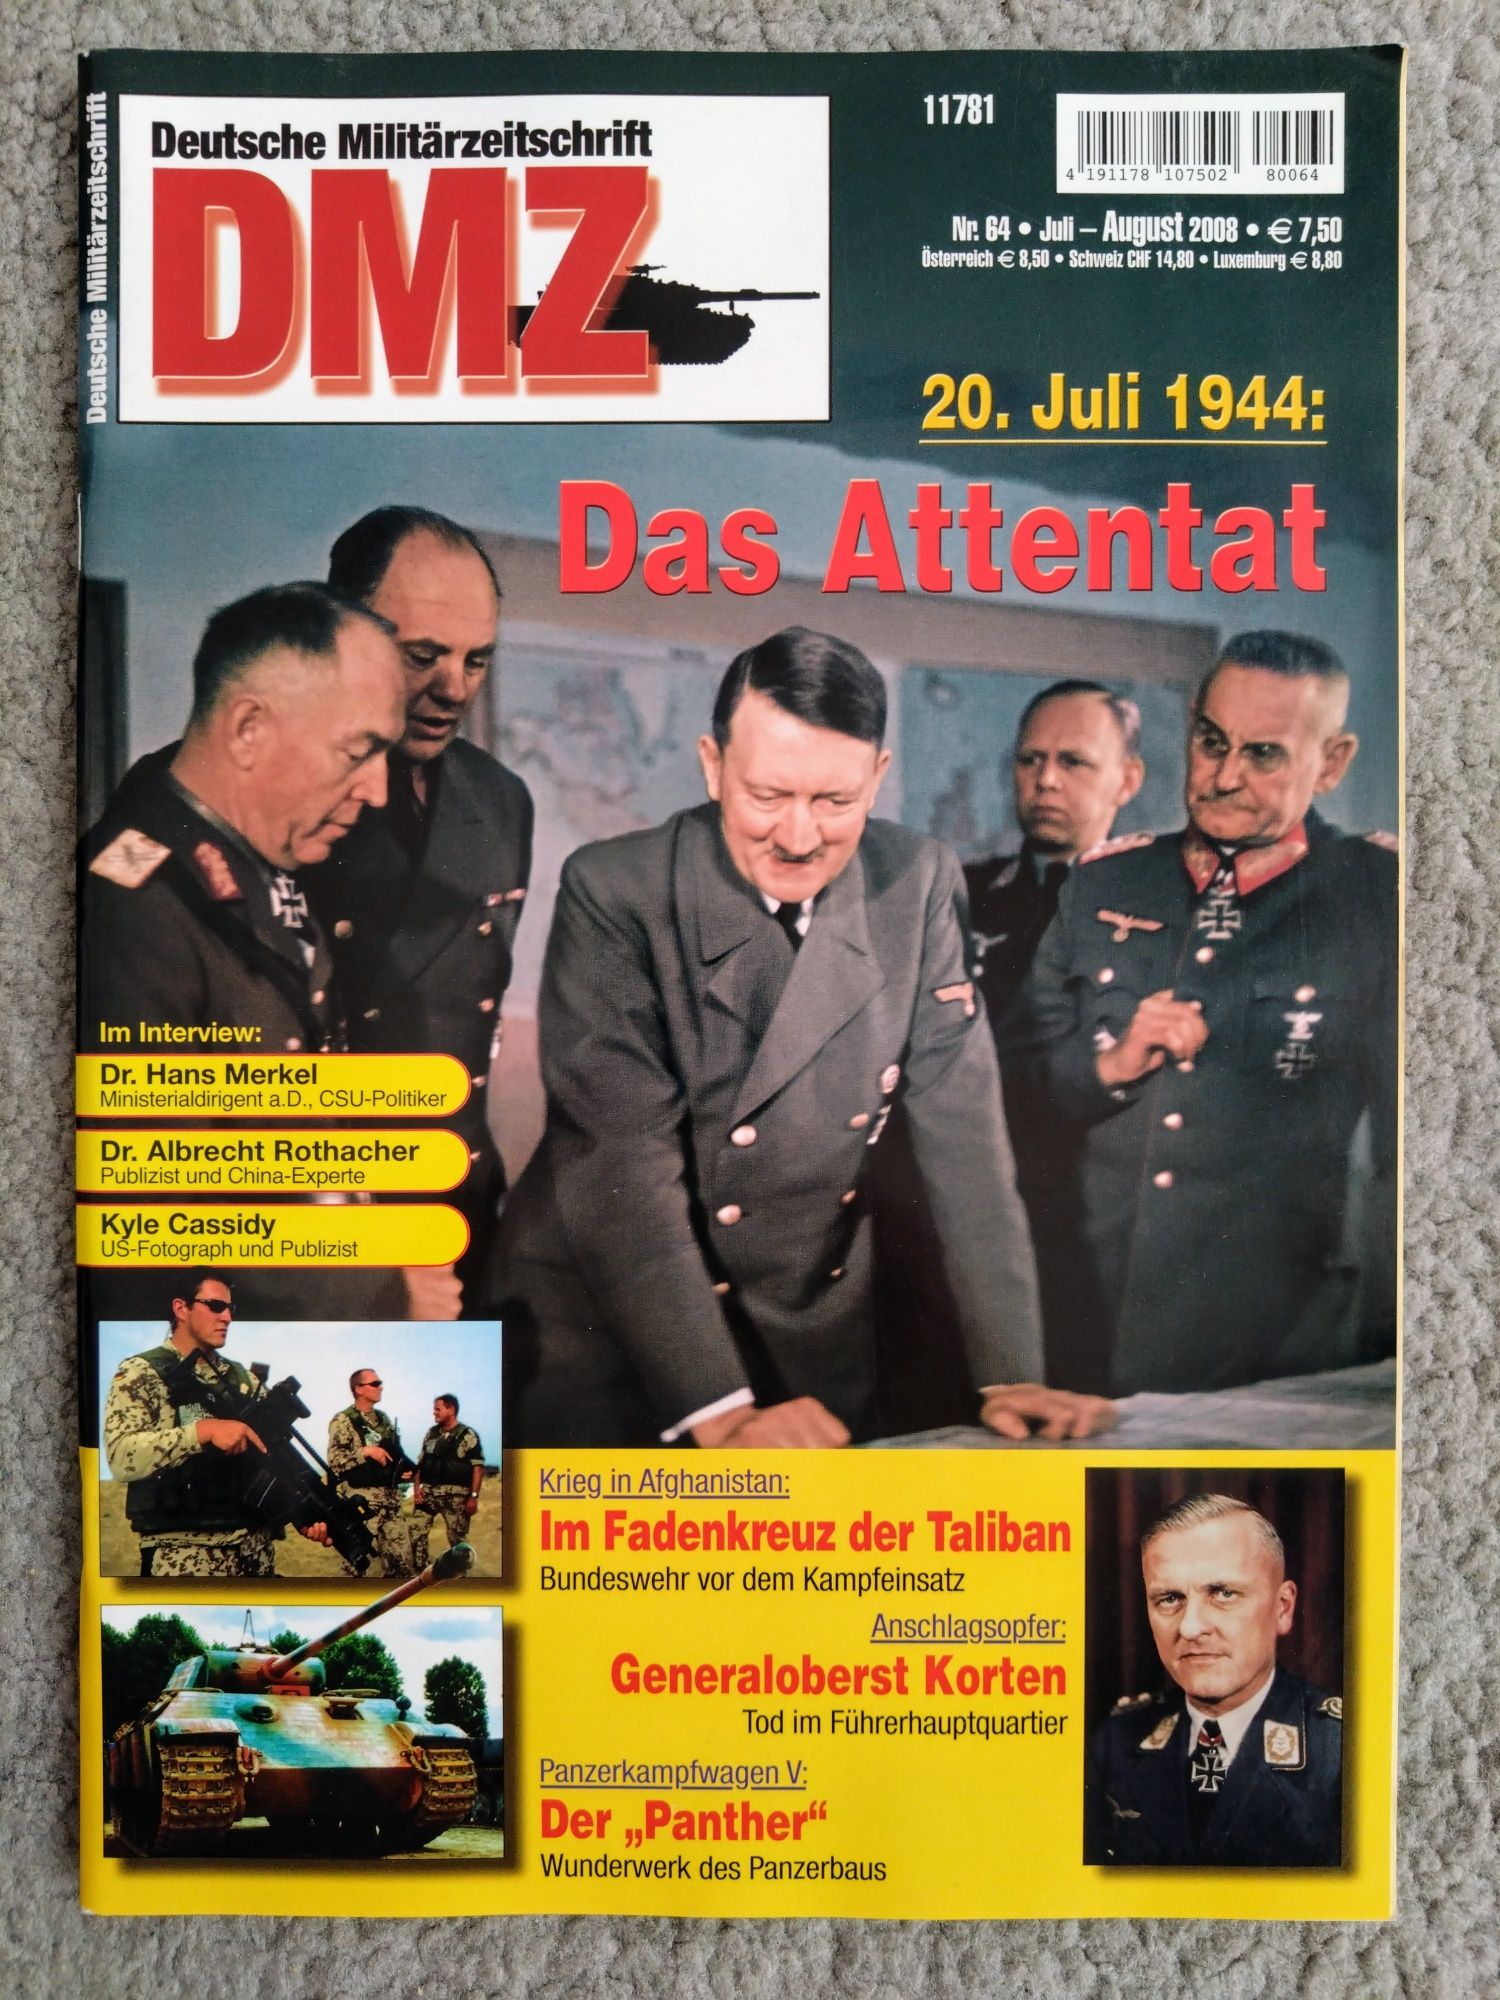 DMZ Deutsche Militarzeitschrift - 2008 rok 4 sztuki.